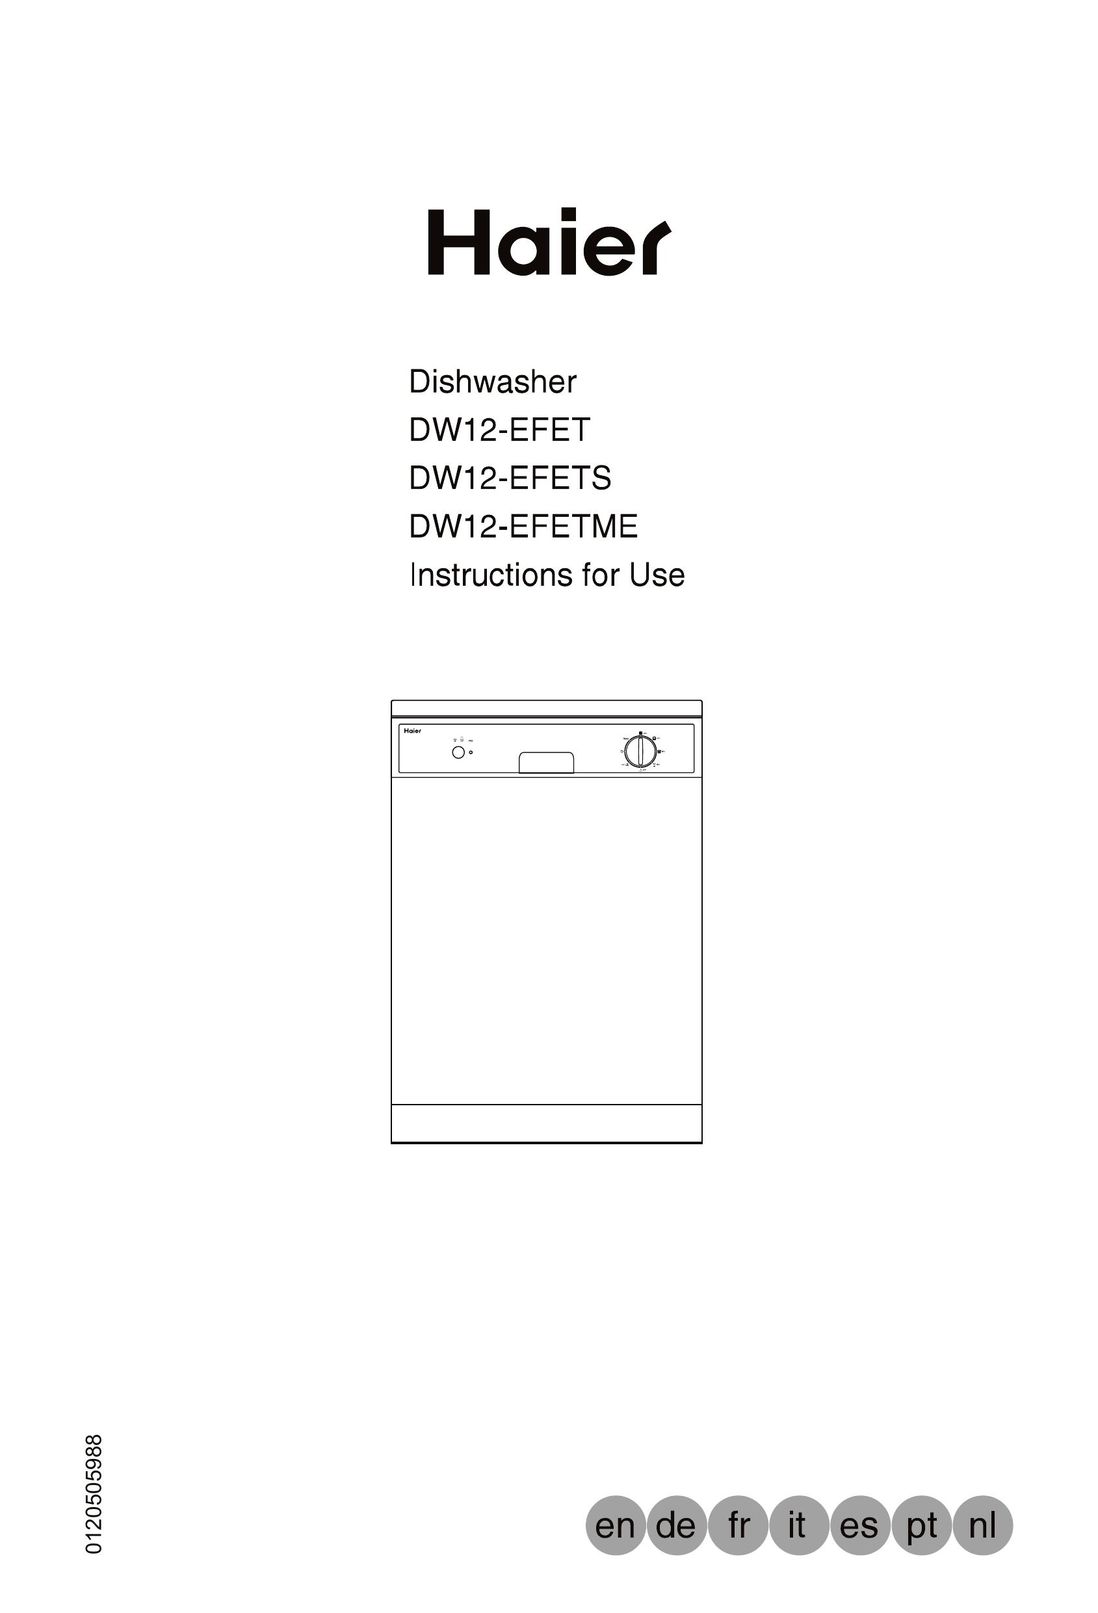 Haier DW12-EFETME Dishwasher User Manual